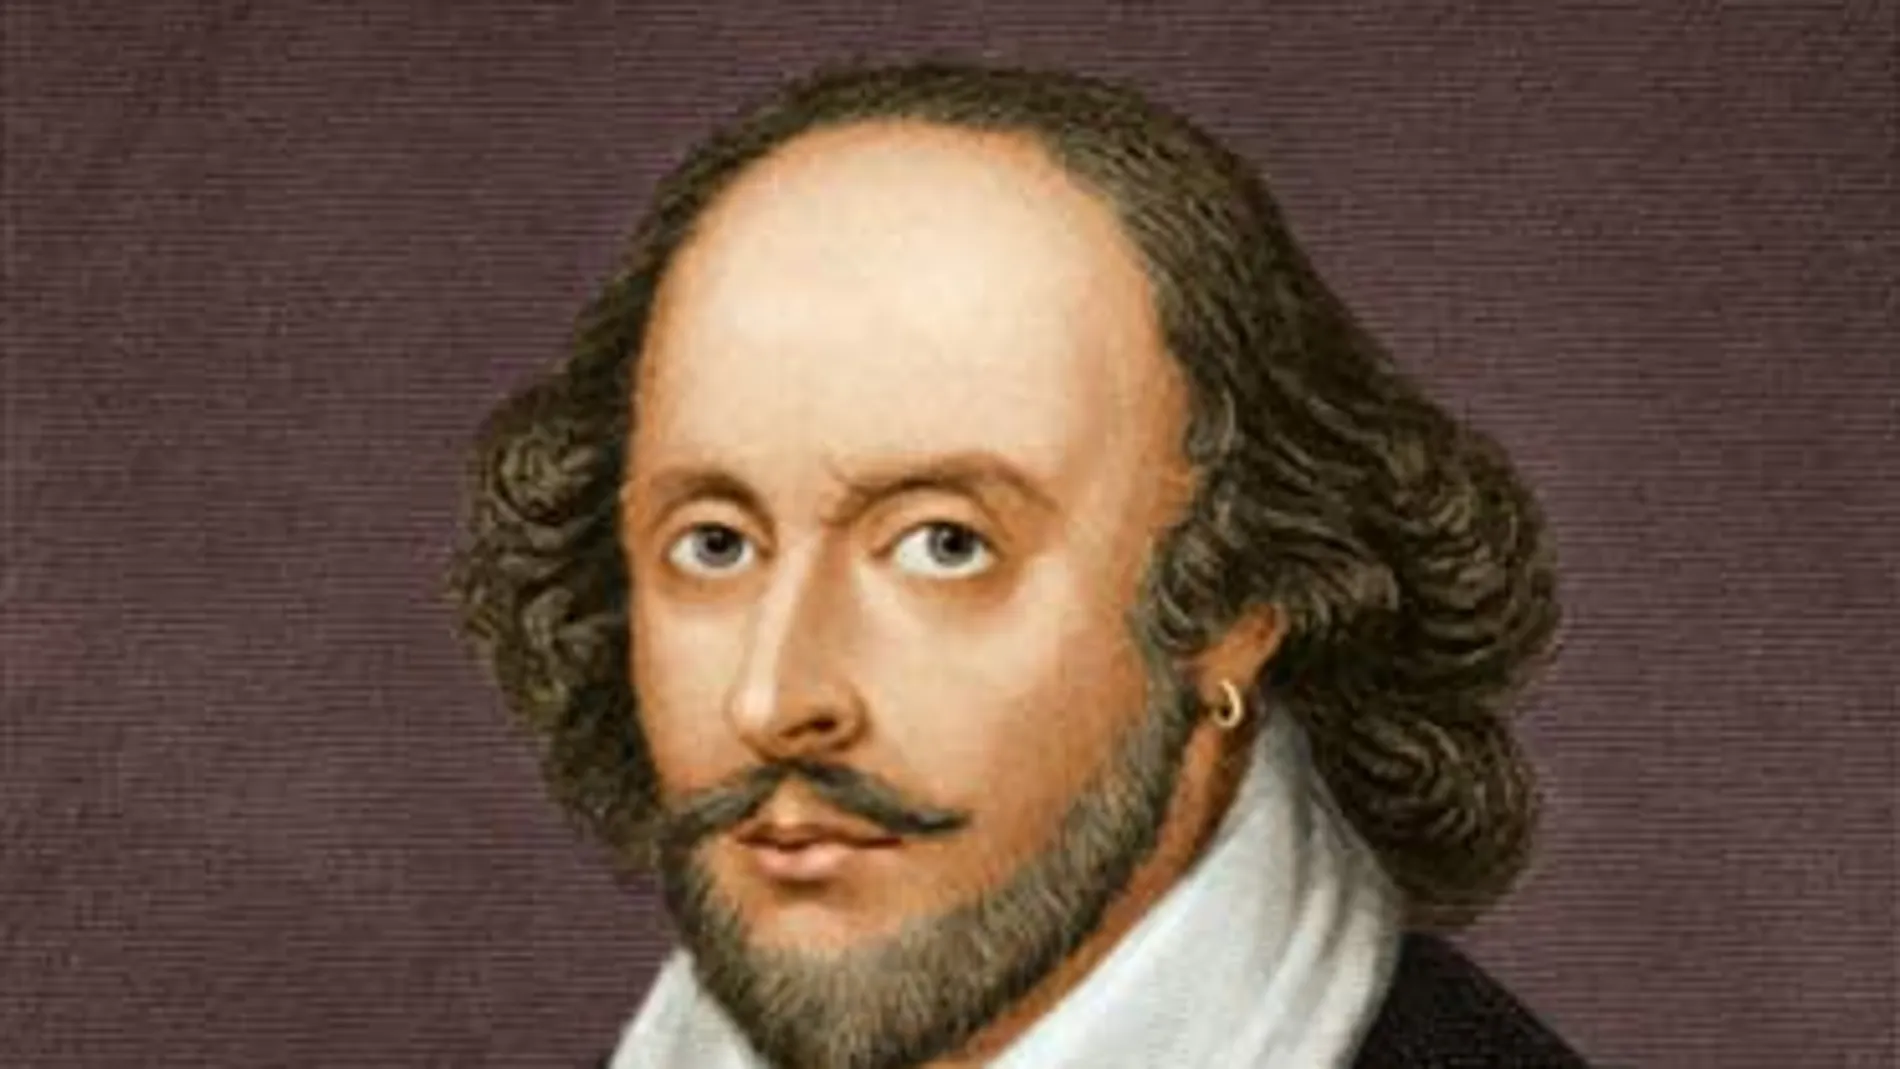 Un análisis demuestra que el cráneo de Shakespeare fue robado de su tumba